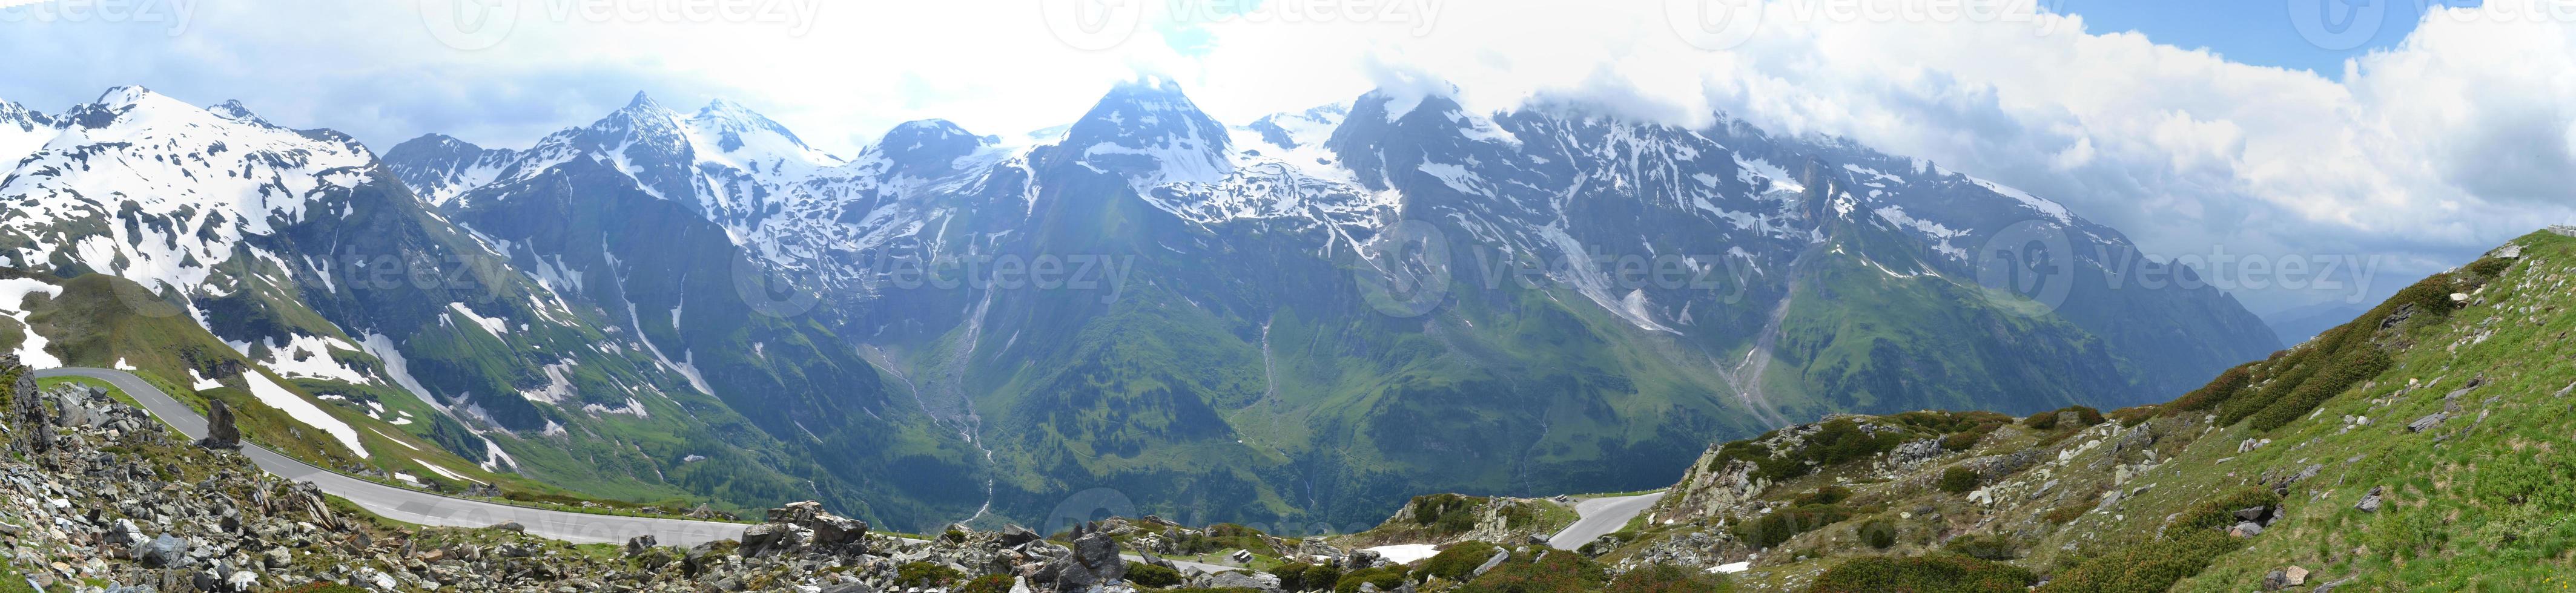 Schnee auf Spitzen von Alpen Berge im Österreich - - Panorama foto